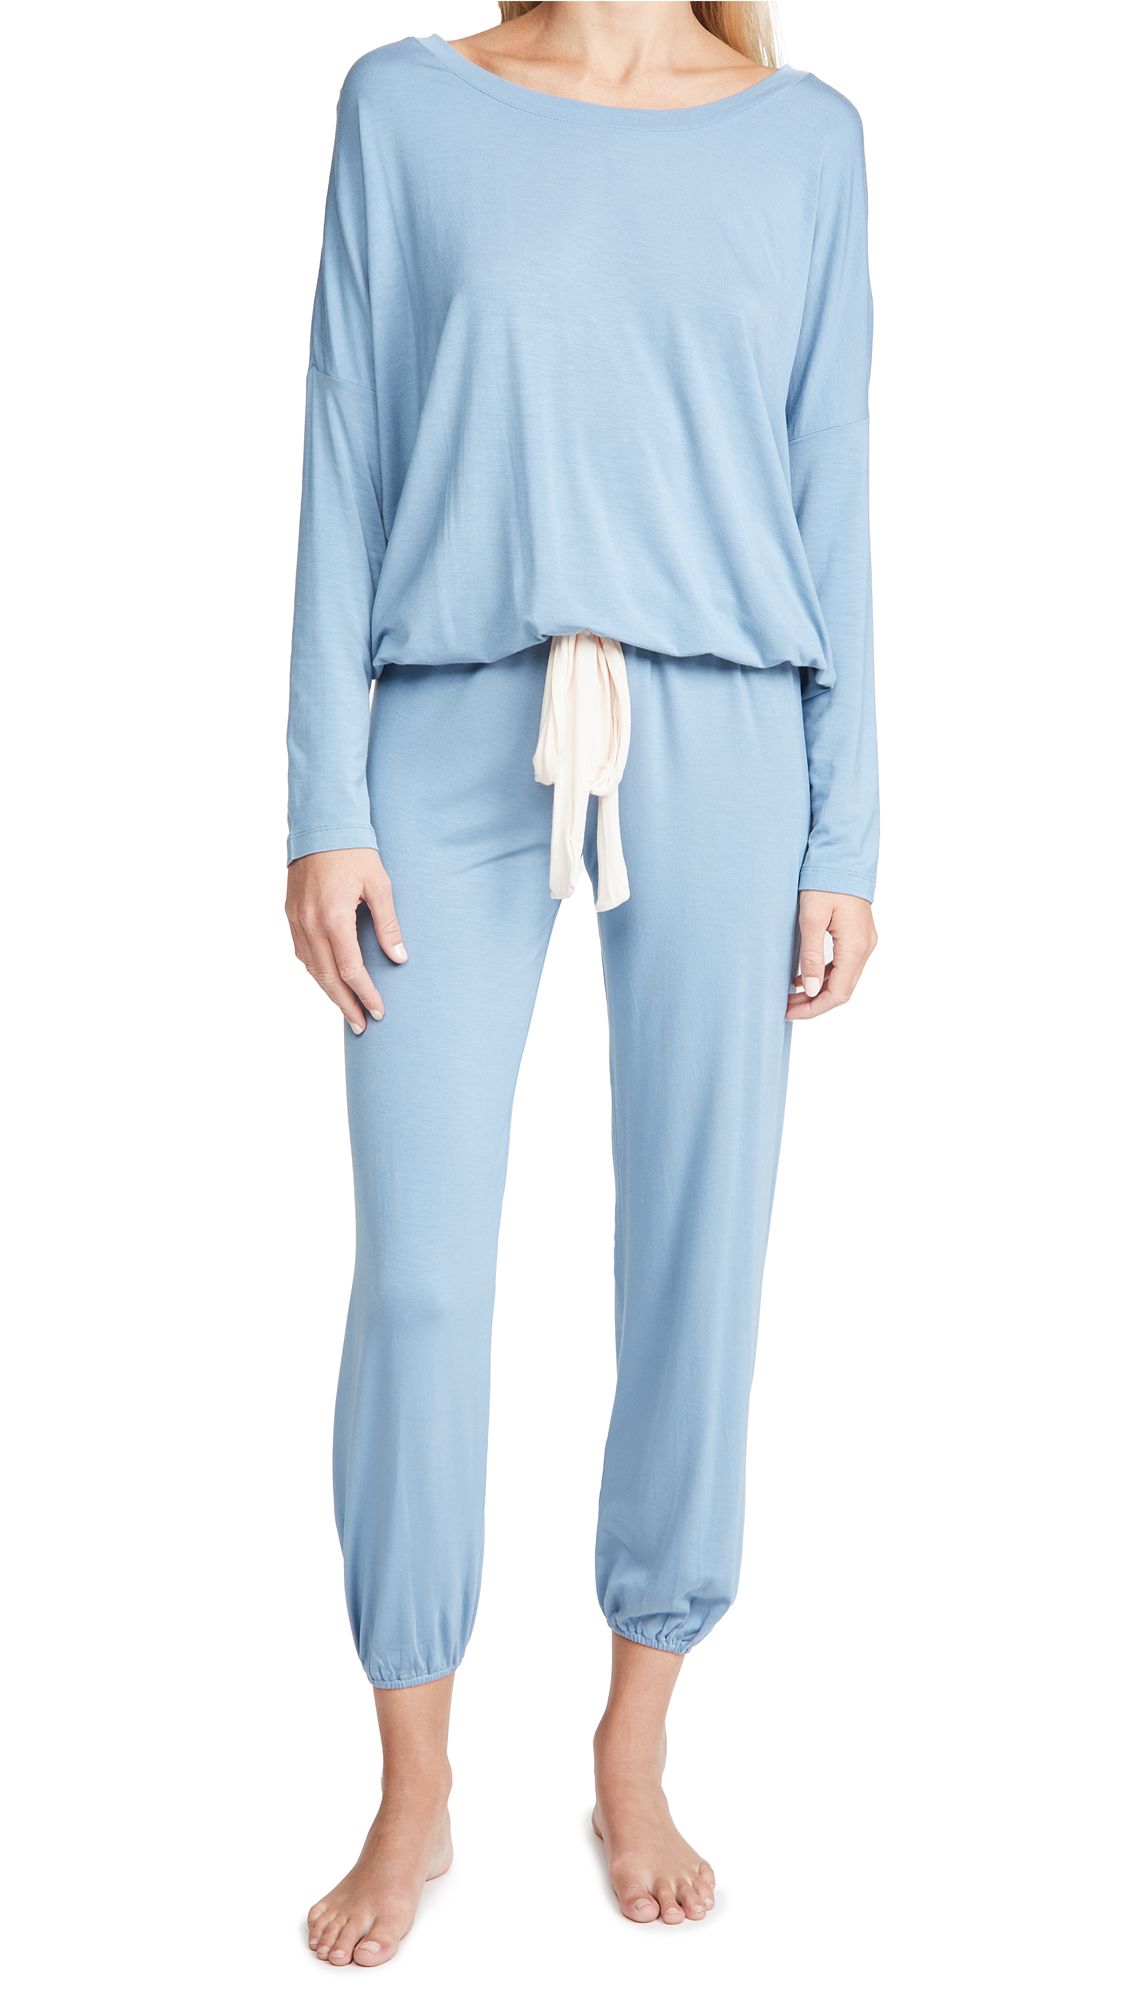 Eberjey Gisele Slouchy Pajama Set | Shopbop